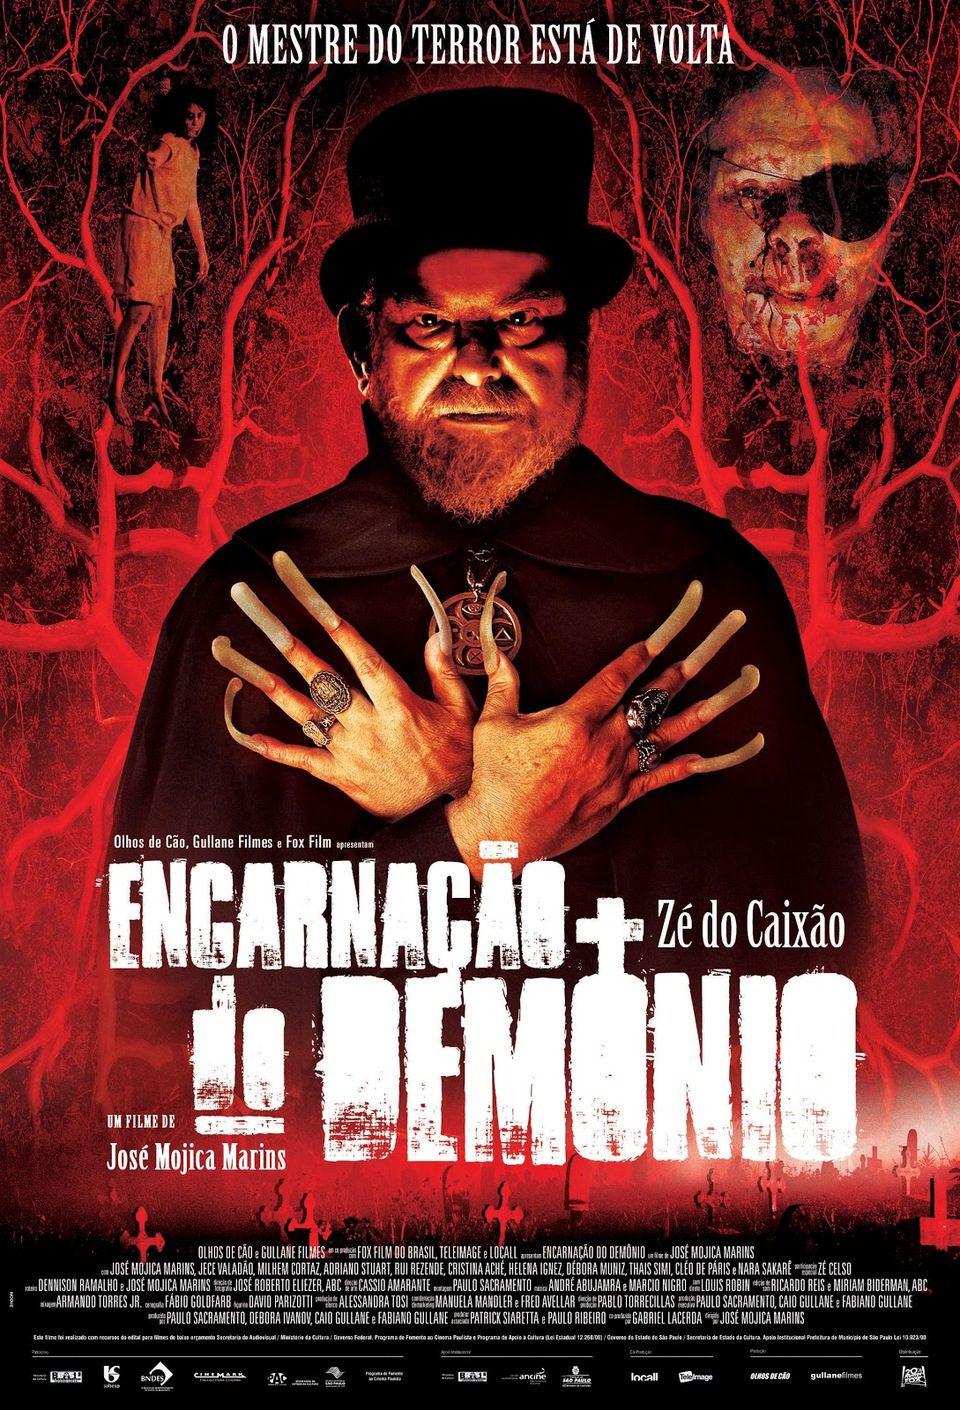 Poster of Devil's Reincarnation - Brasil